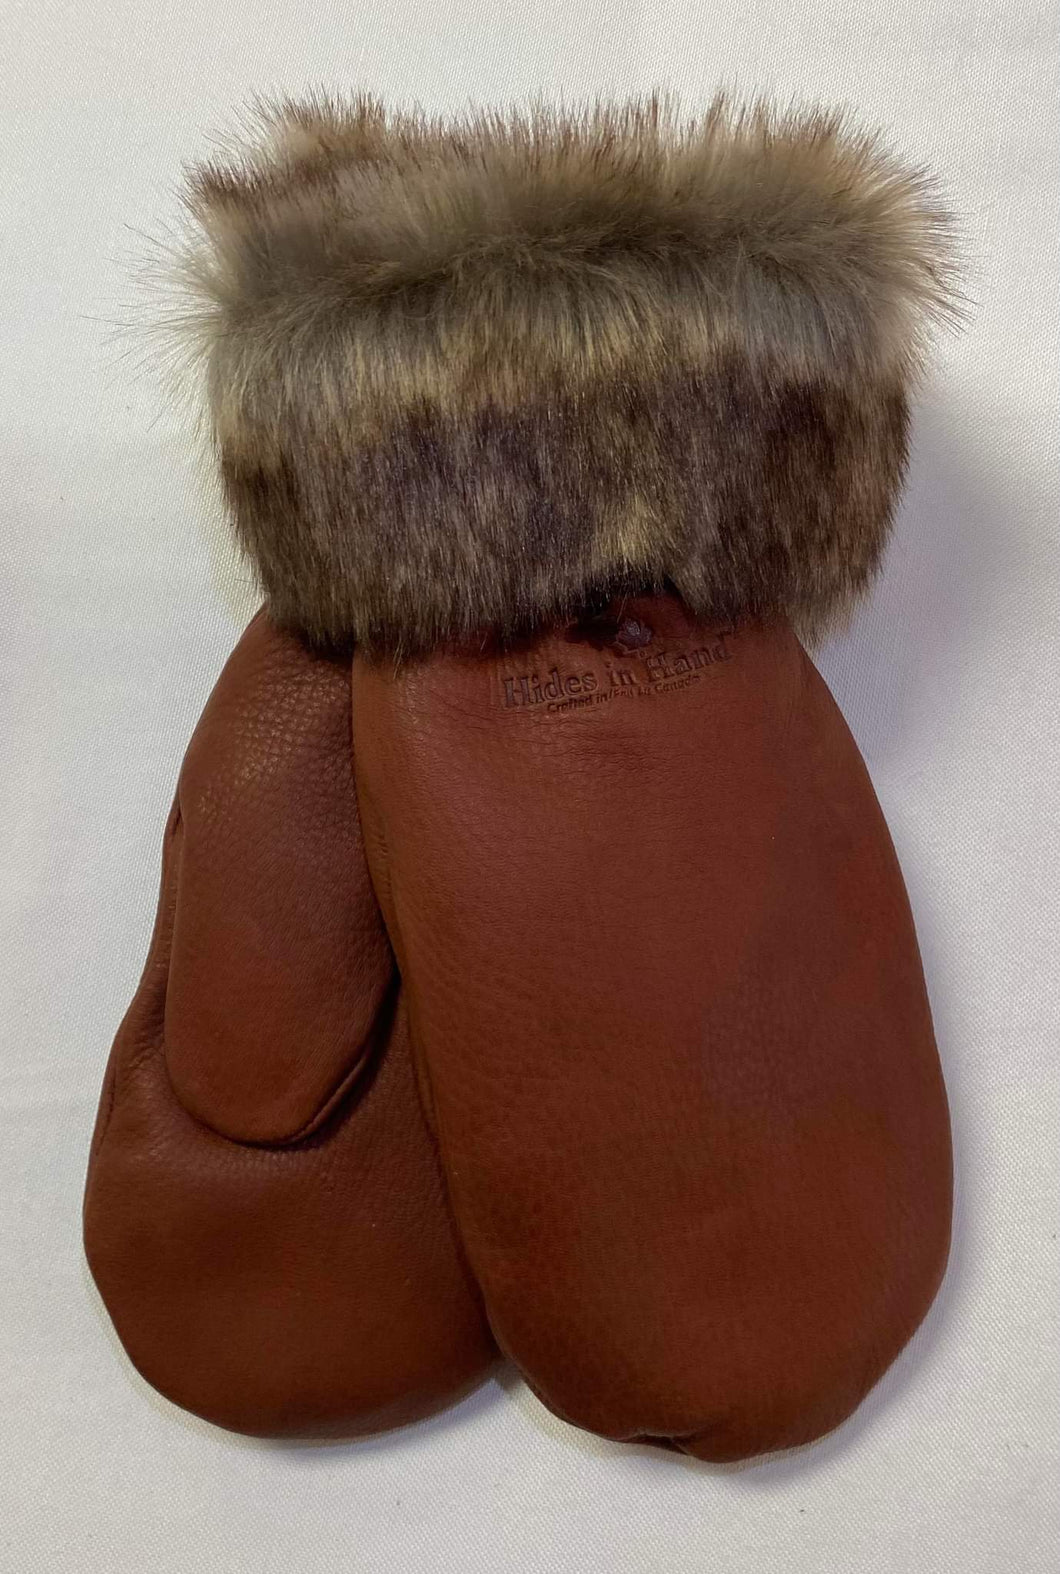 Hides in Hand - Deerskin Leather Gloves - Cognac Brown